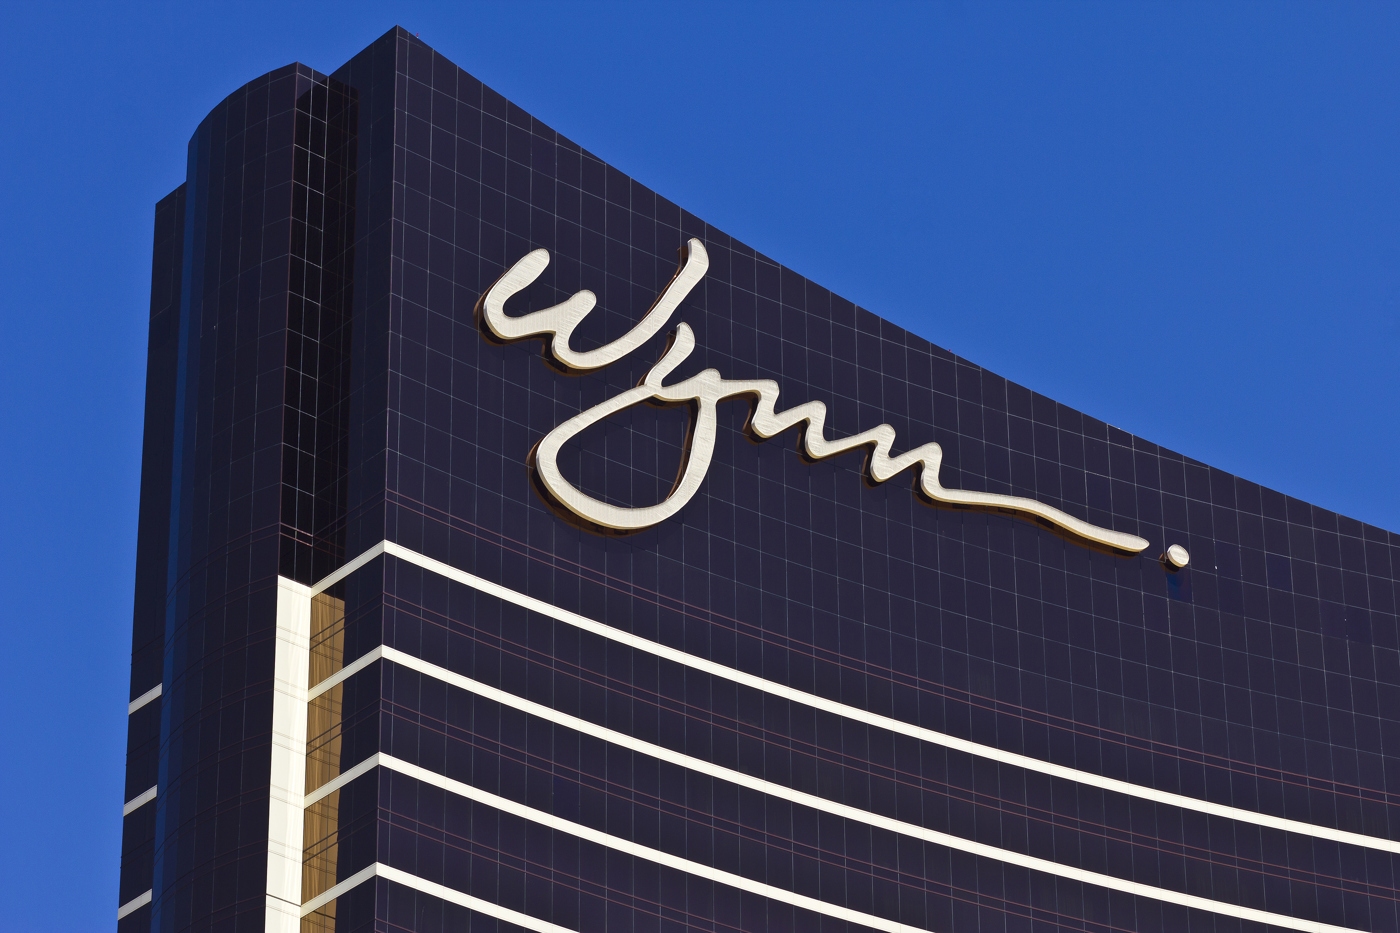 Wynn Resorts stock, WYNN stock, Wynn Hotel stock